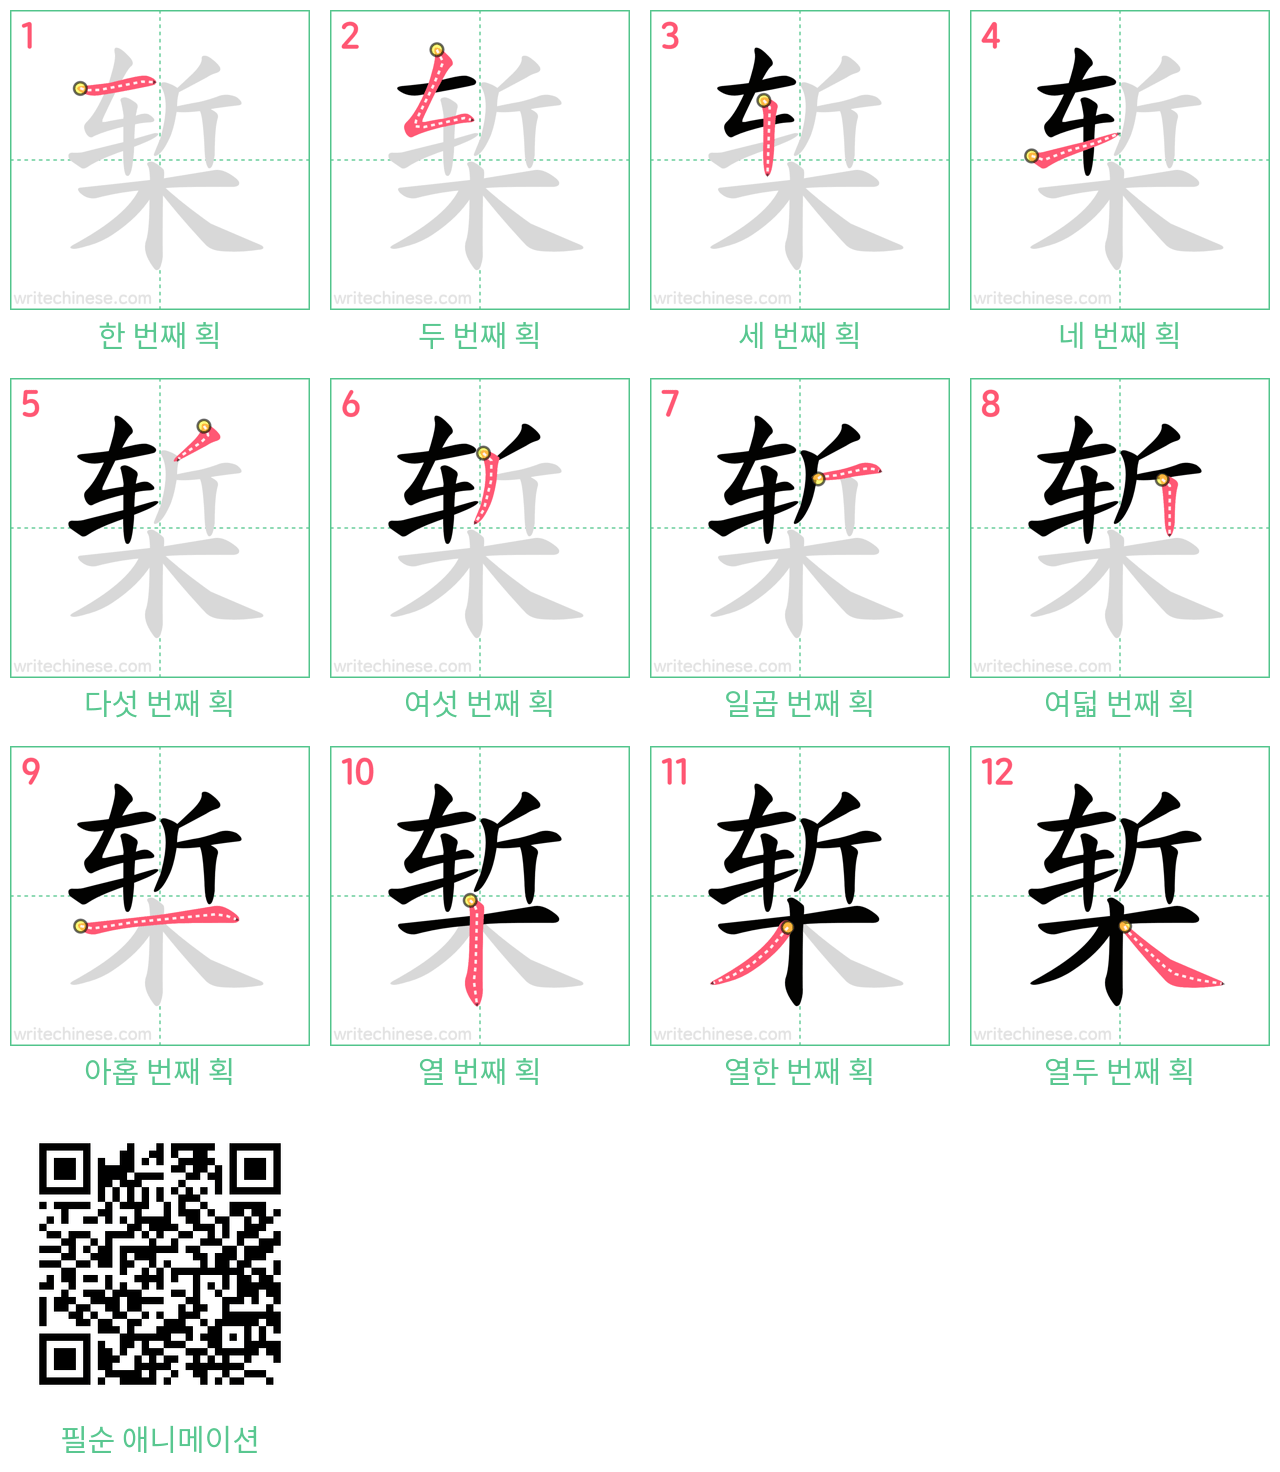 椠 step-by-step stroke order diagrams